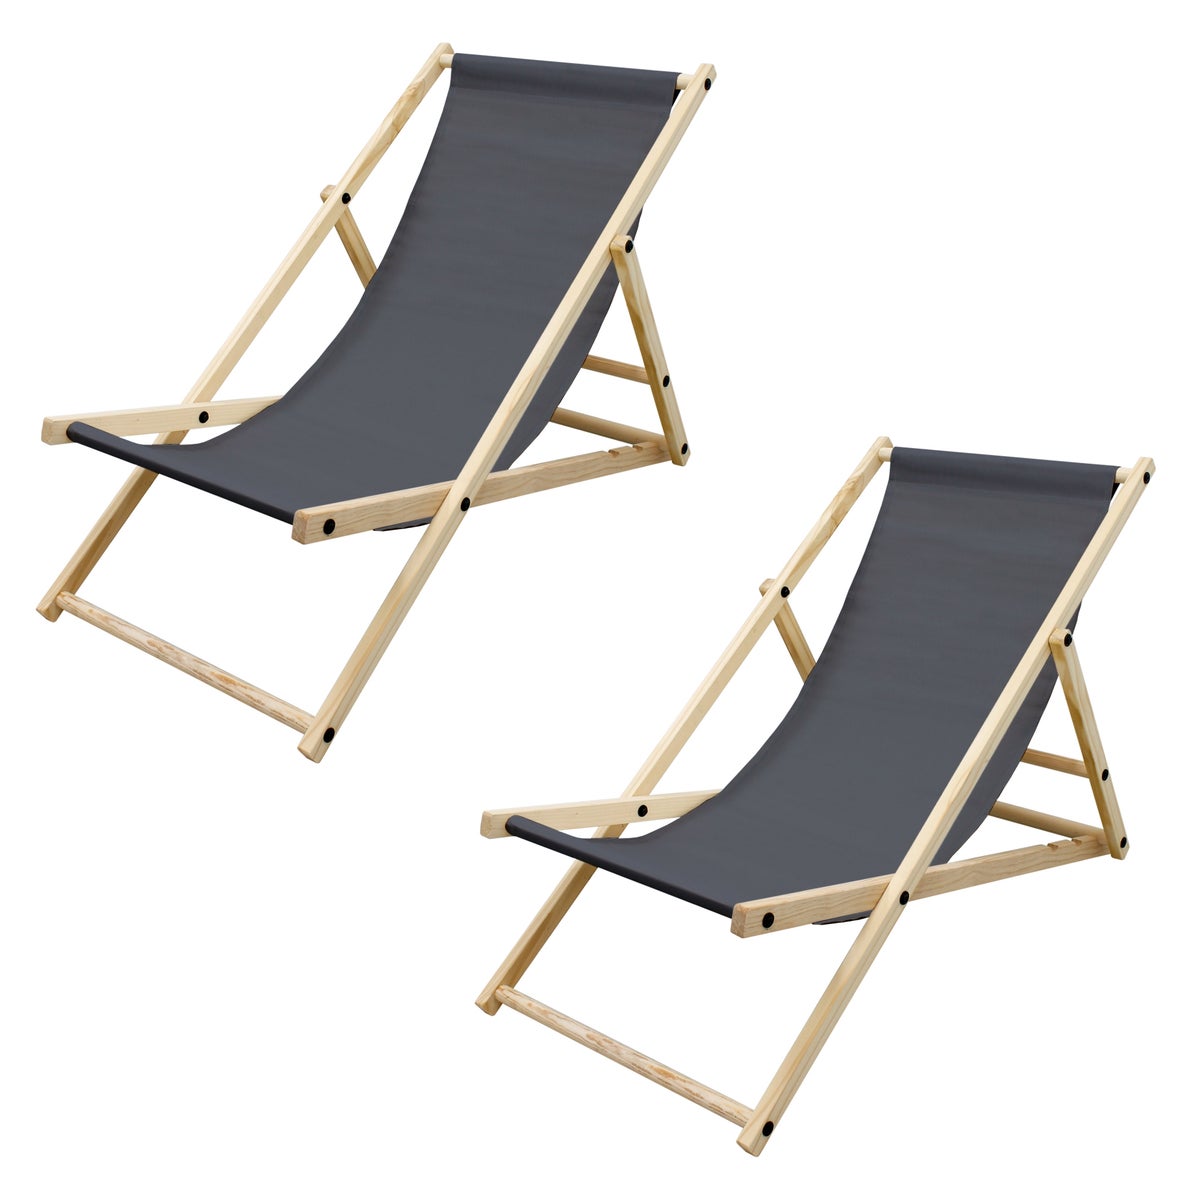 ECD Germany 2er Set Liegestuhl klappbar aus Holz, 3 Liegepositionen, Anthrazit, bis 120kg, Gartenliege Sonnenliege Relaxliege Strandliege Liege Strandstuhl Klappstuhl für den Garten Terrasse Balkon